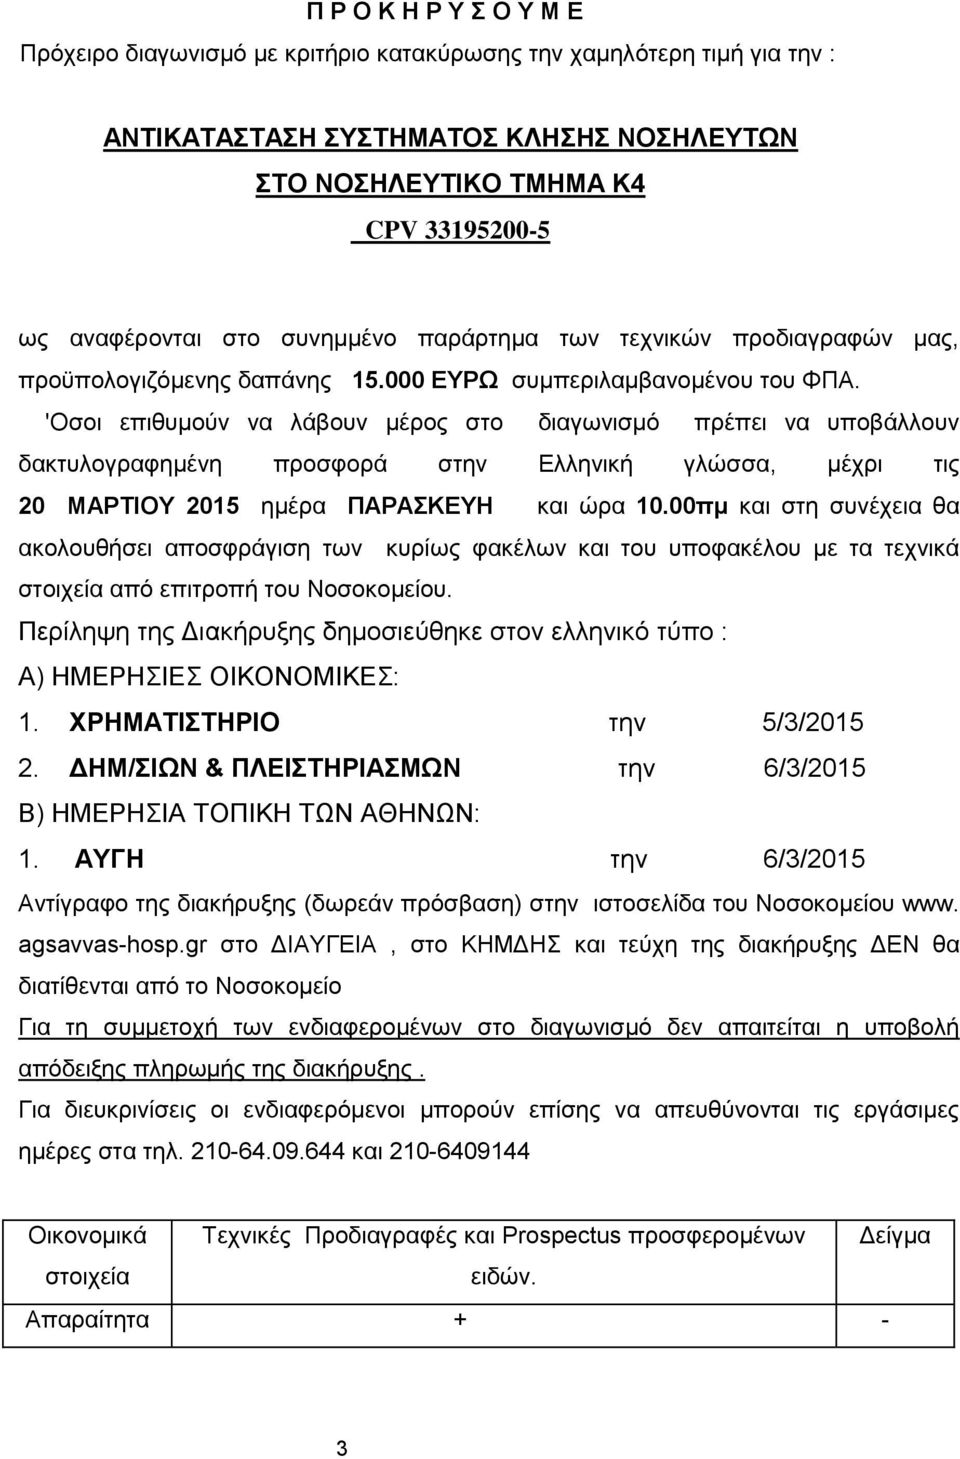 'Οσοι επιθυμούν να λάβουν μέρος στο διαγωνισμό πρέπει να υποβάλλουν δακτυλογραφημένη προσφορά στην Ελληνική γλώσσα, μέχρι τις 20 MΑΡTΙΟΥ 2015 ημέρα ΠΑΡΑΣΚΕΥΗ και ώρα 10.